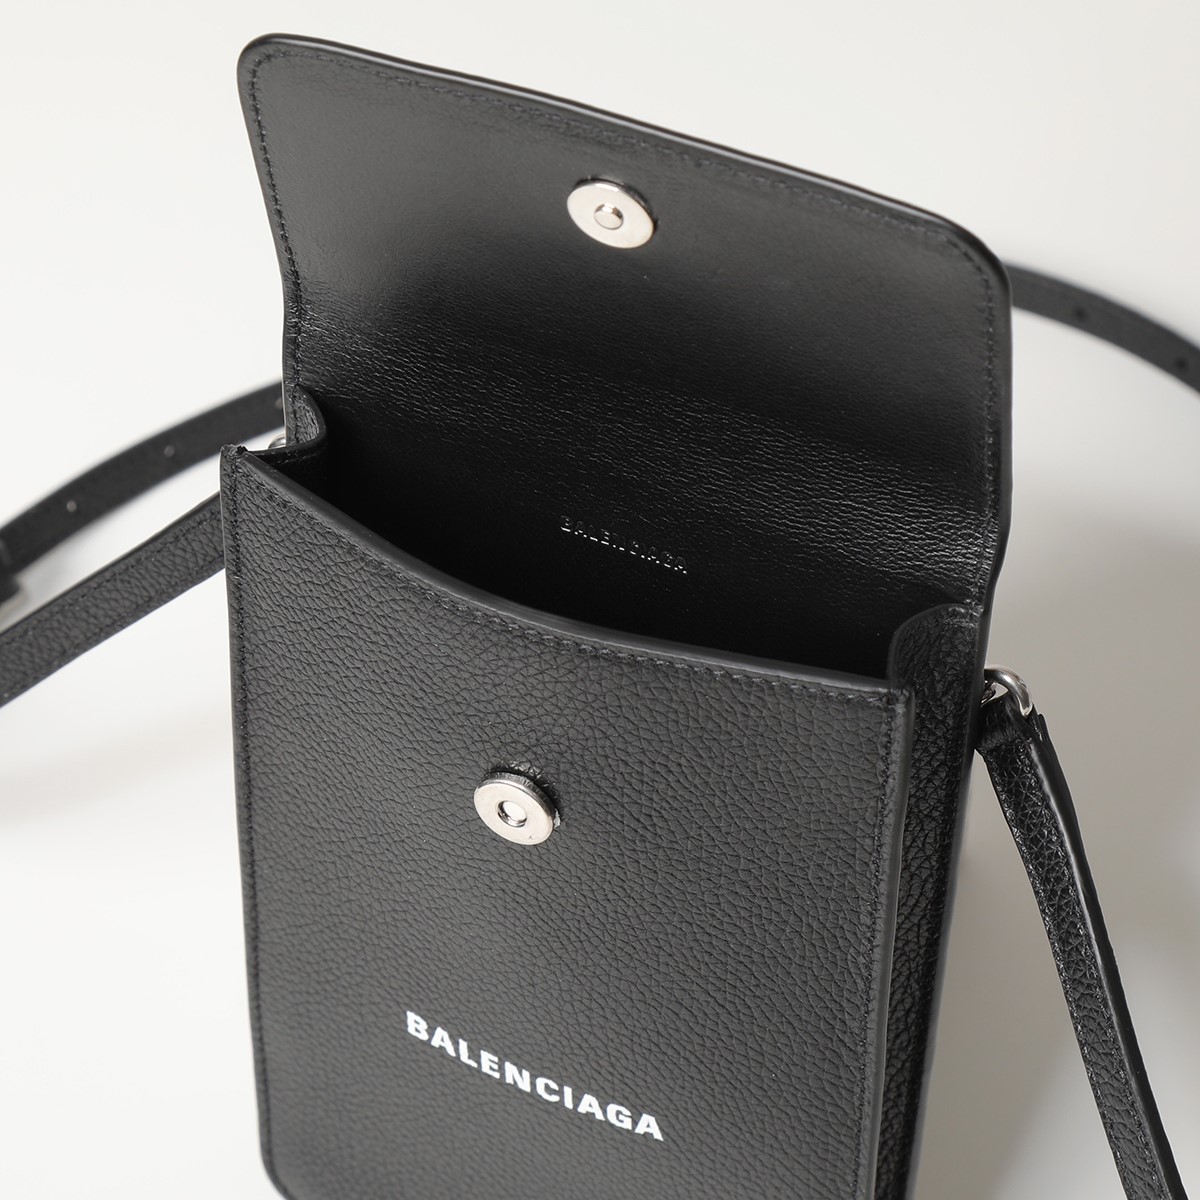 BALENCIAGA バレンシアガ 640536 1IZI3 CASH レザー フォンケース 携帯ケース スマホケース マイクロバッグ  ショルダーバッグ 1090/BLACK-LWHITE 鞄 メンズ レディース | インポートセレクト musee